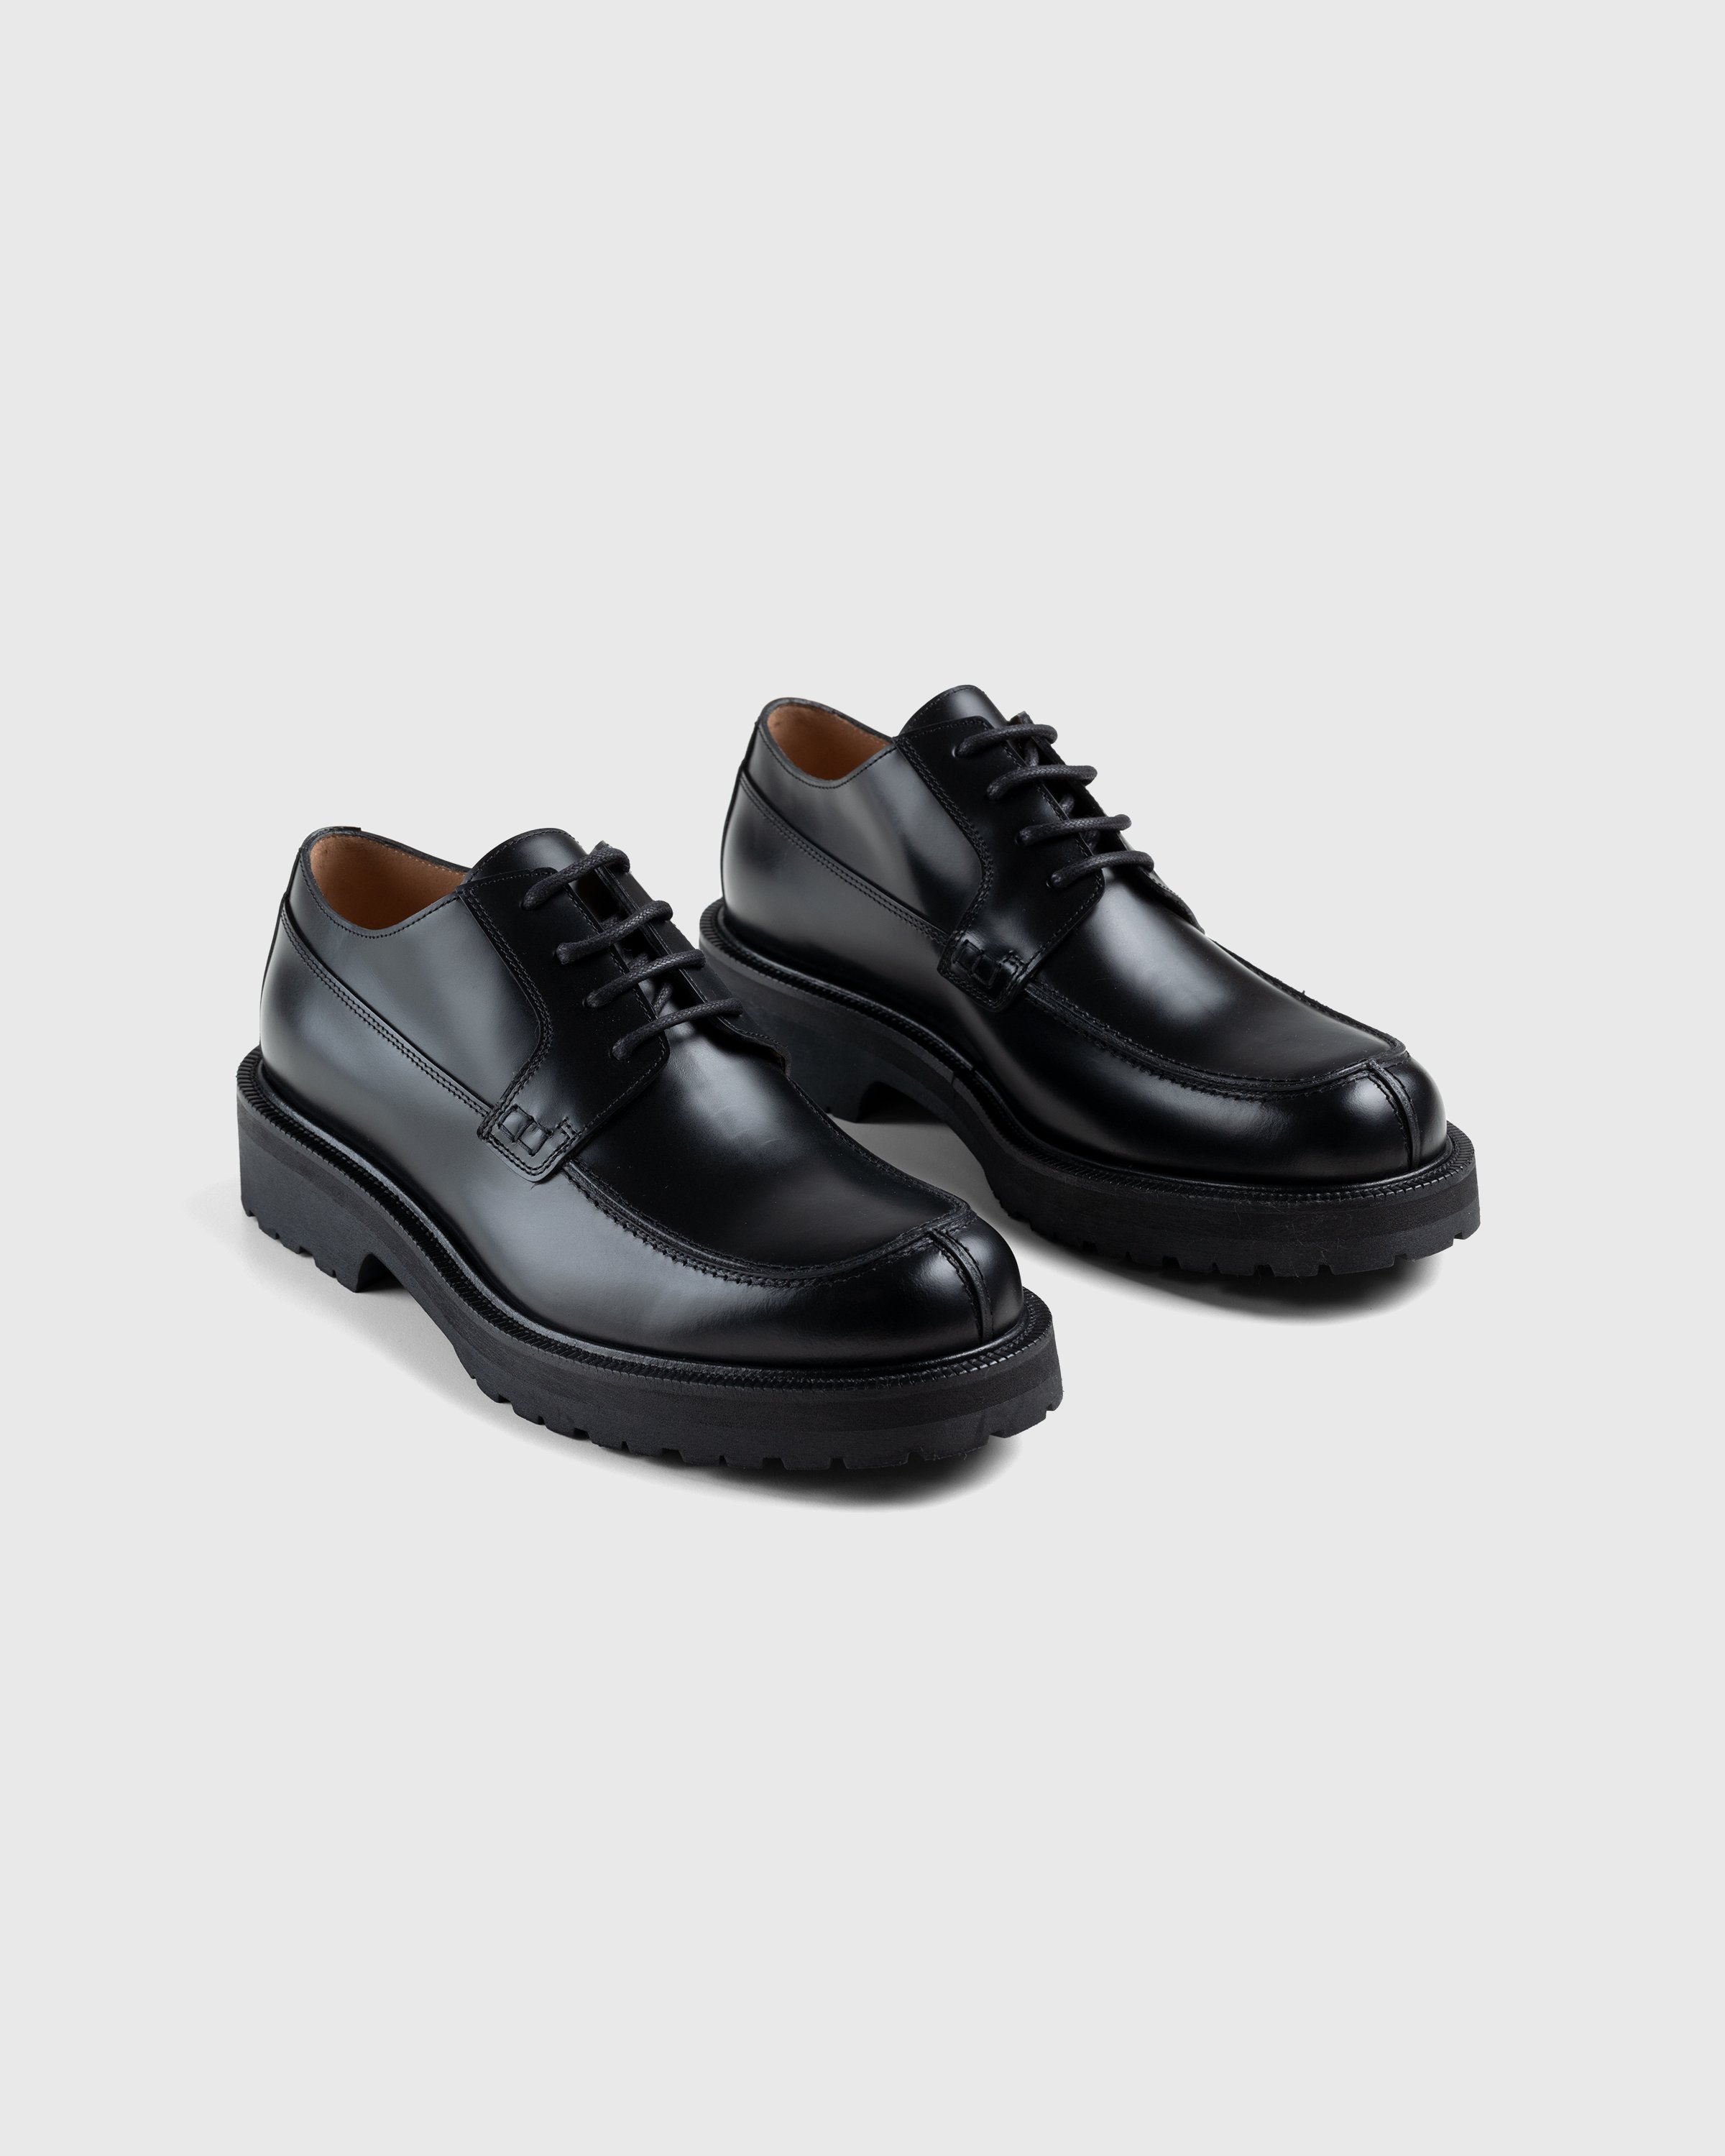 Dries van Noten - Patent Leather Derbies - Footwear - Black - Image 3